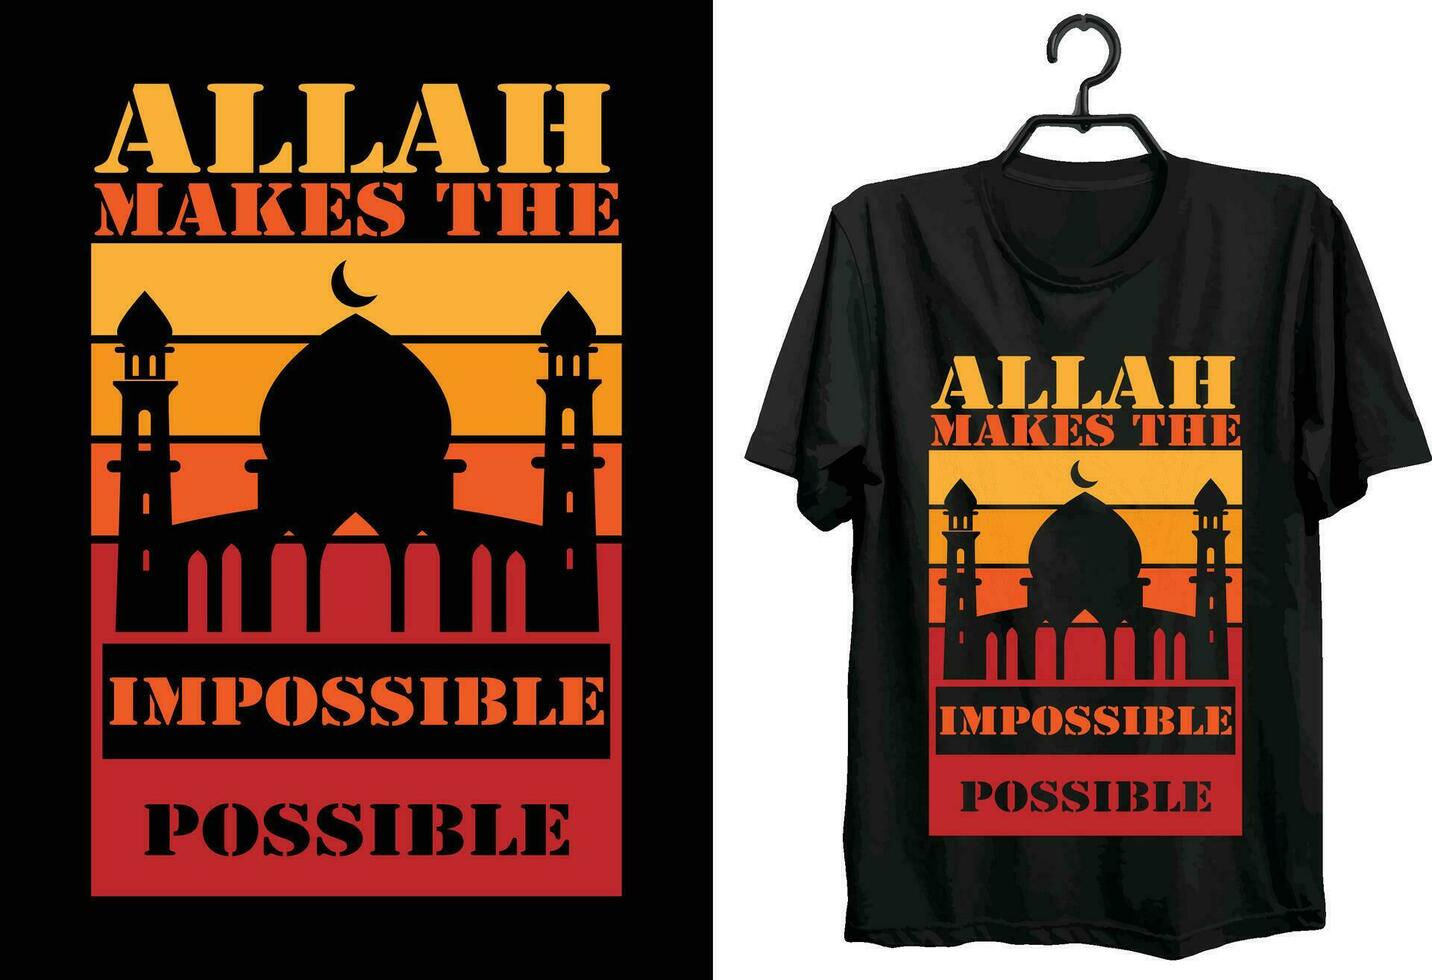 islamic t-shirt design. gåva Artikel islamic t-shirt design för Allt muslimer. vektor